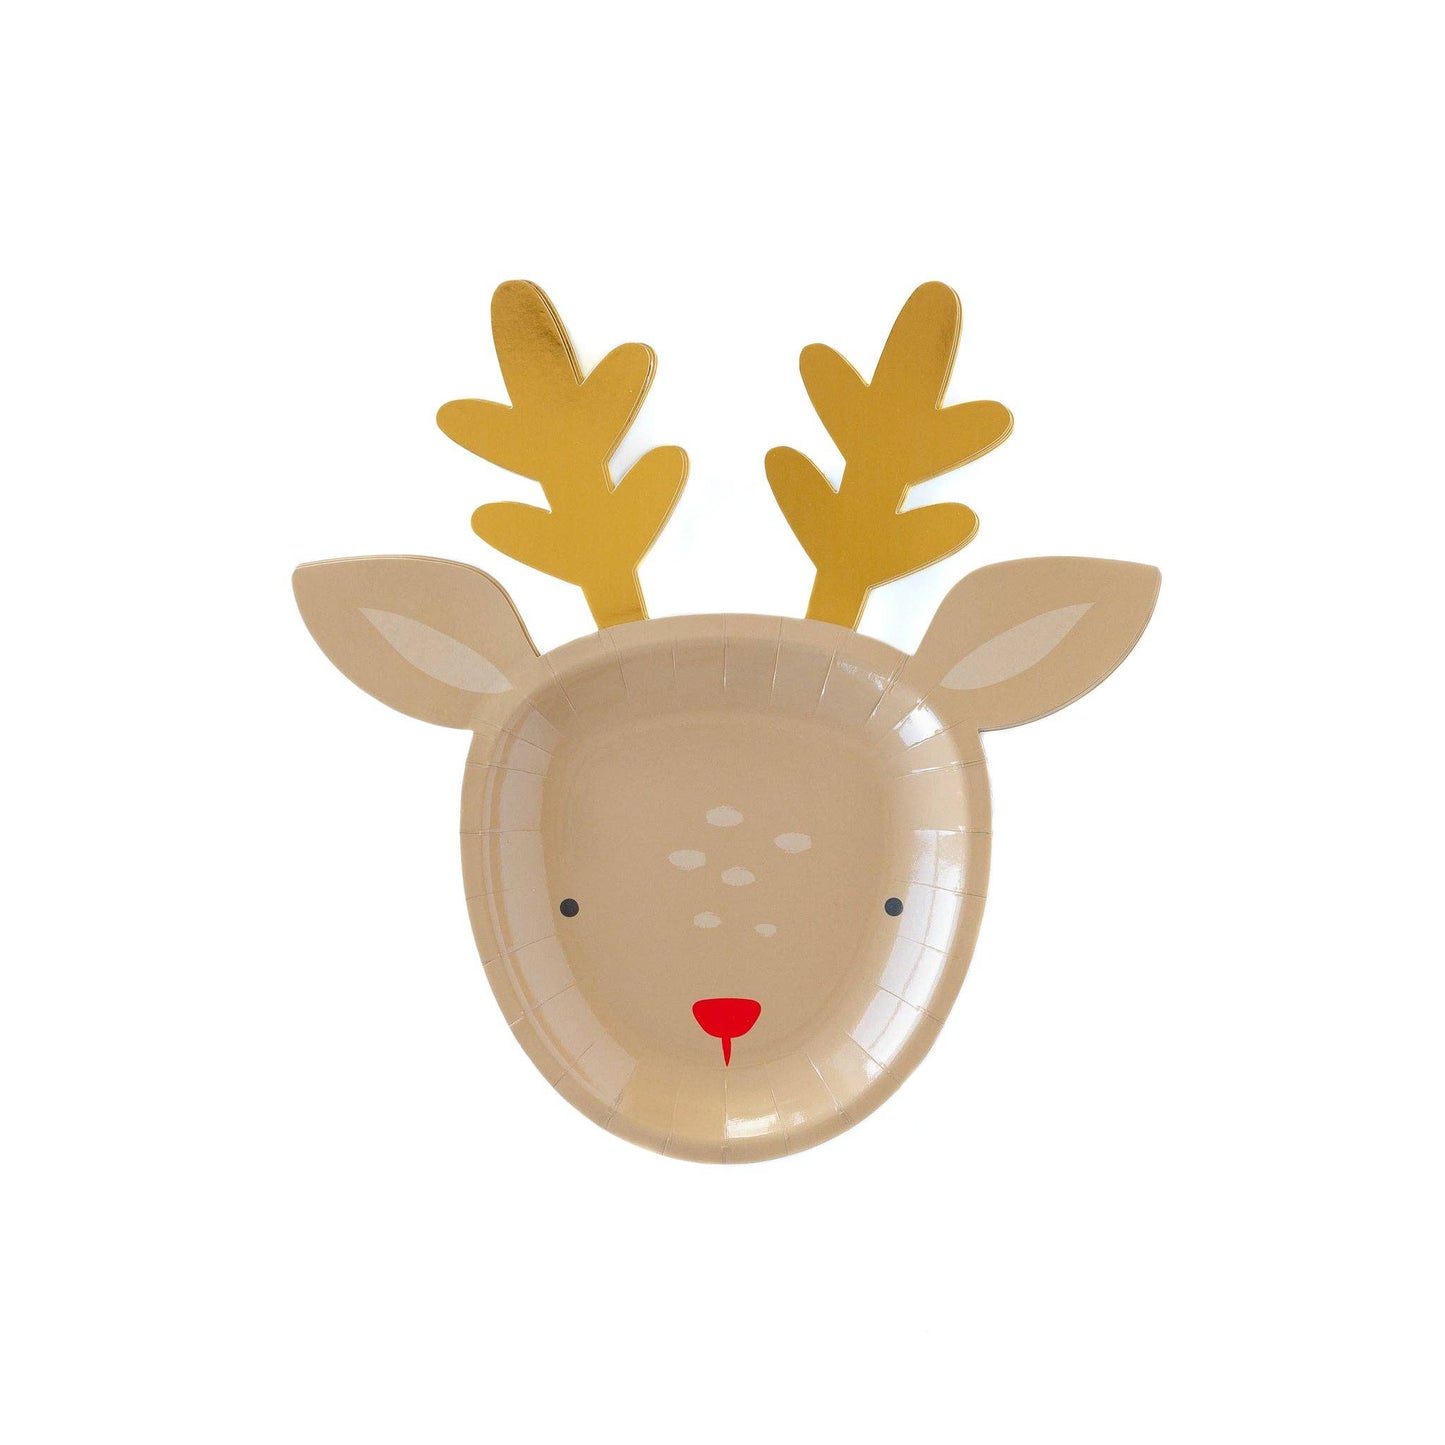 BEC845 - Dear Rudolph Reindeer Plate